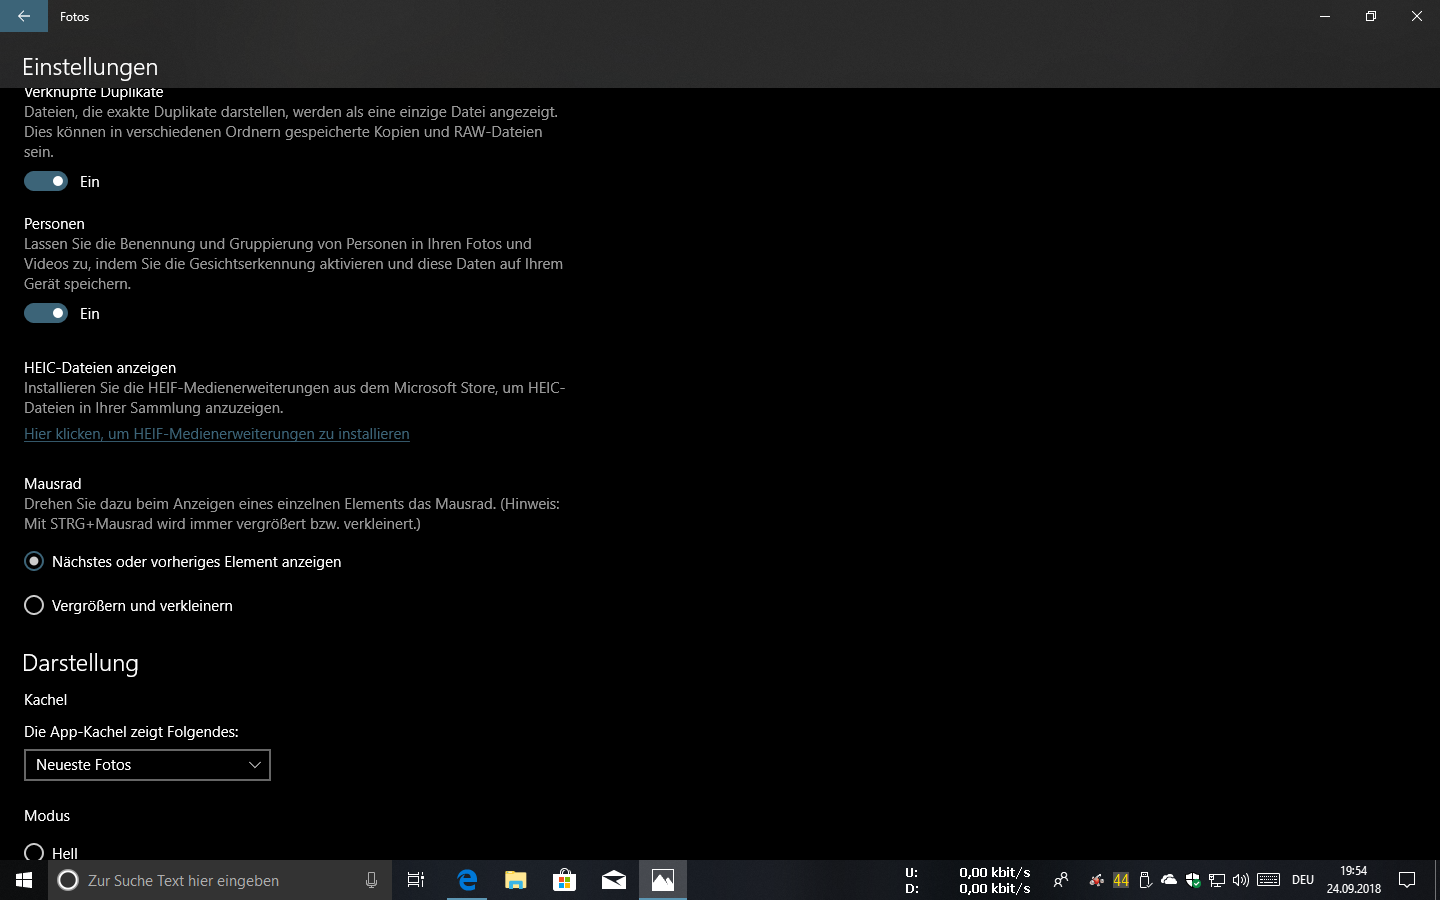 Windows 10, heic dateien